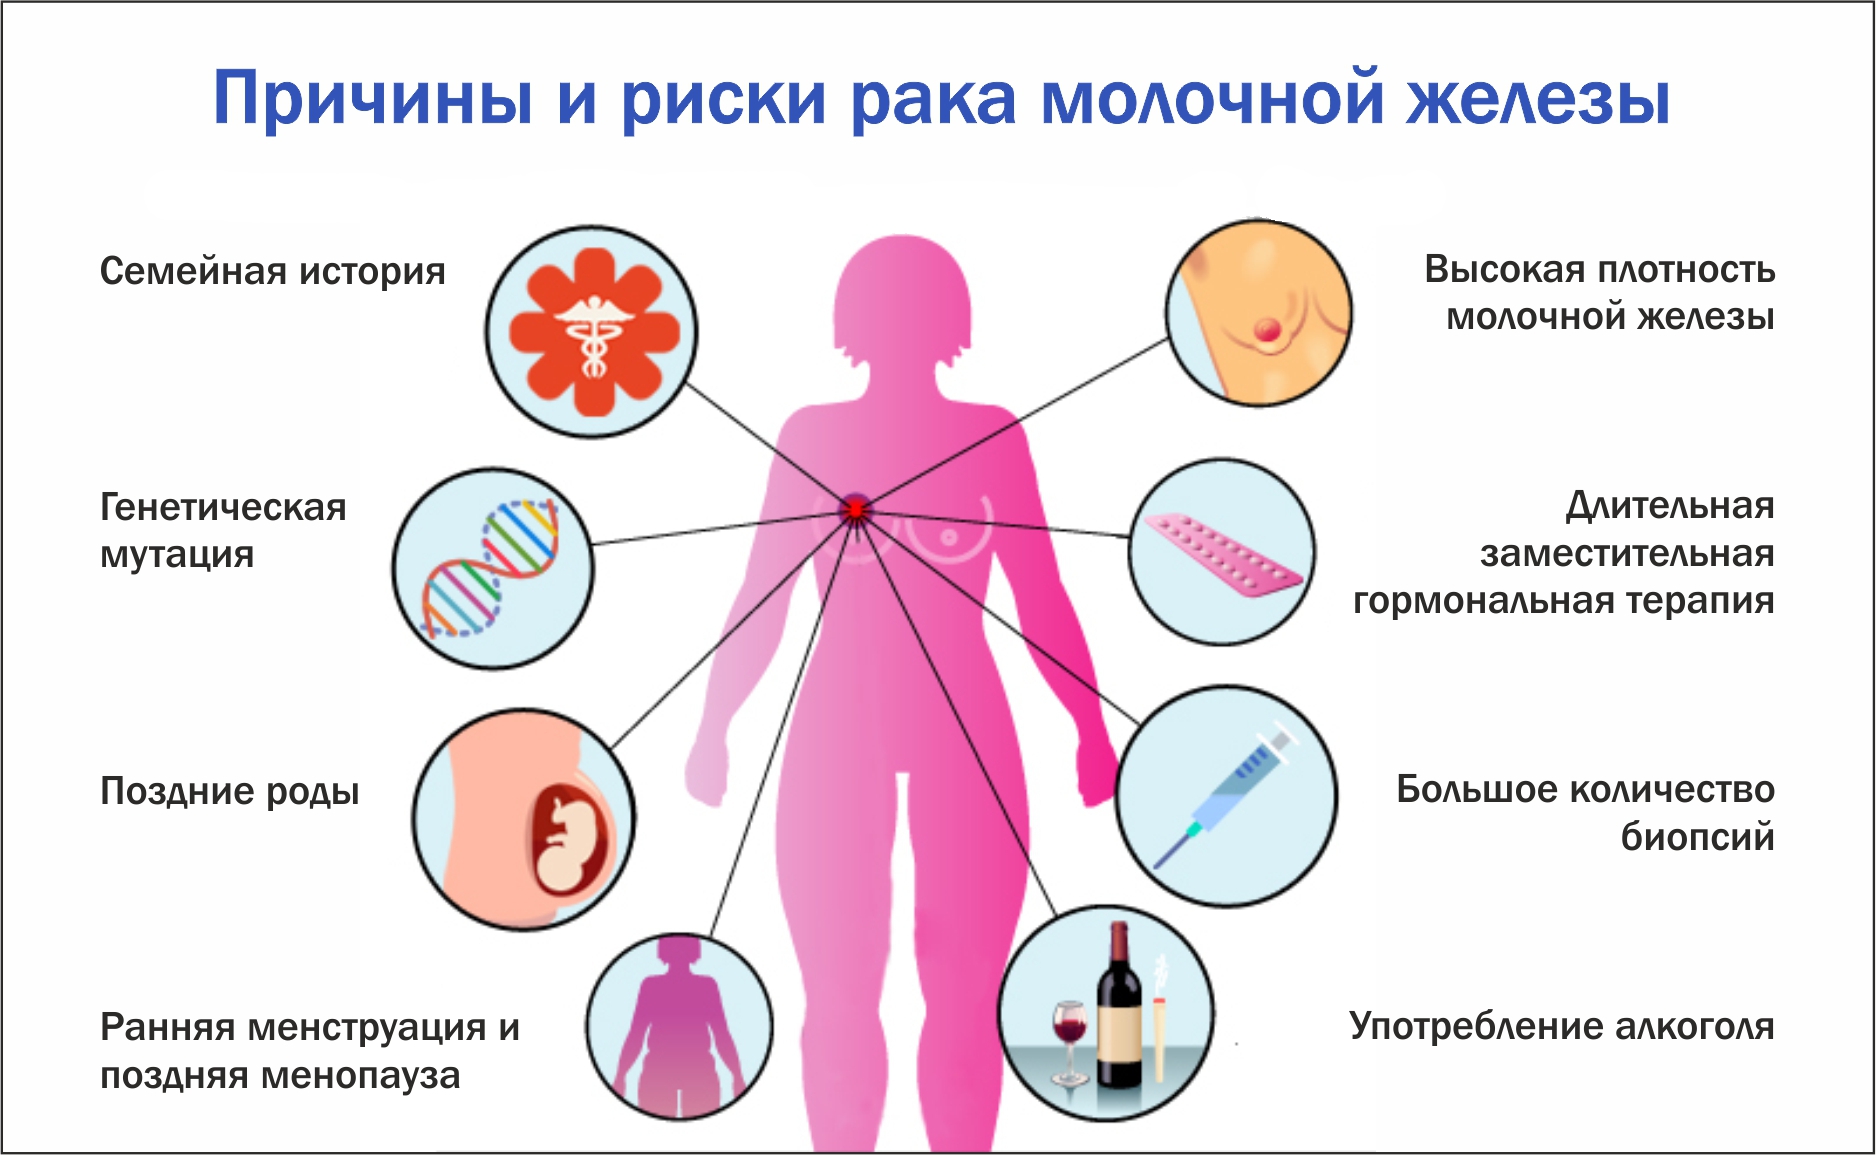 Лечение рака молочной железы 0, 1, 2, 3, 4 стадии - Клиника Здоровье г. Екатеринбург